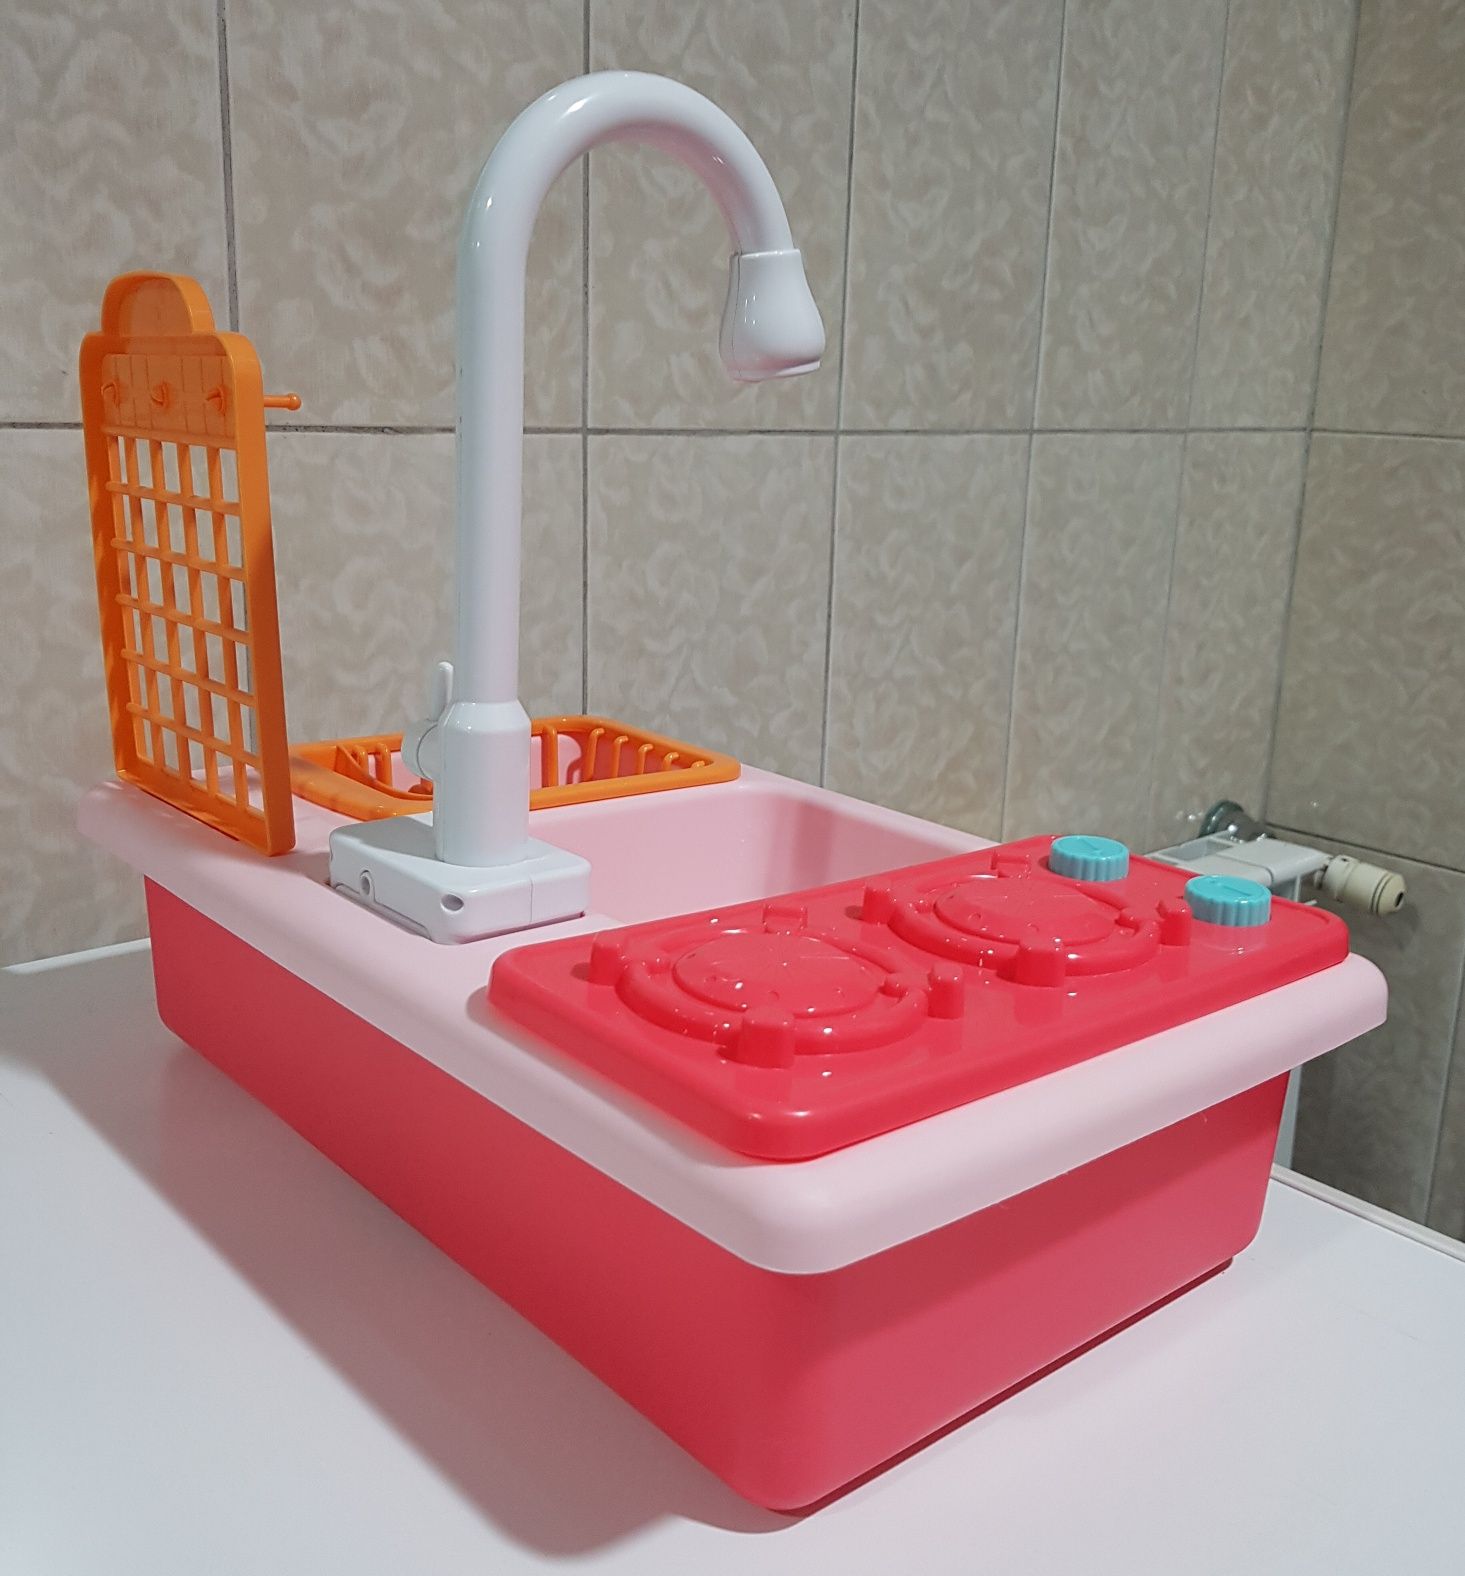 Brinquedo para Criança : Lava-Loiças comTorneira deita água